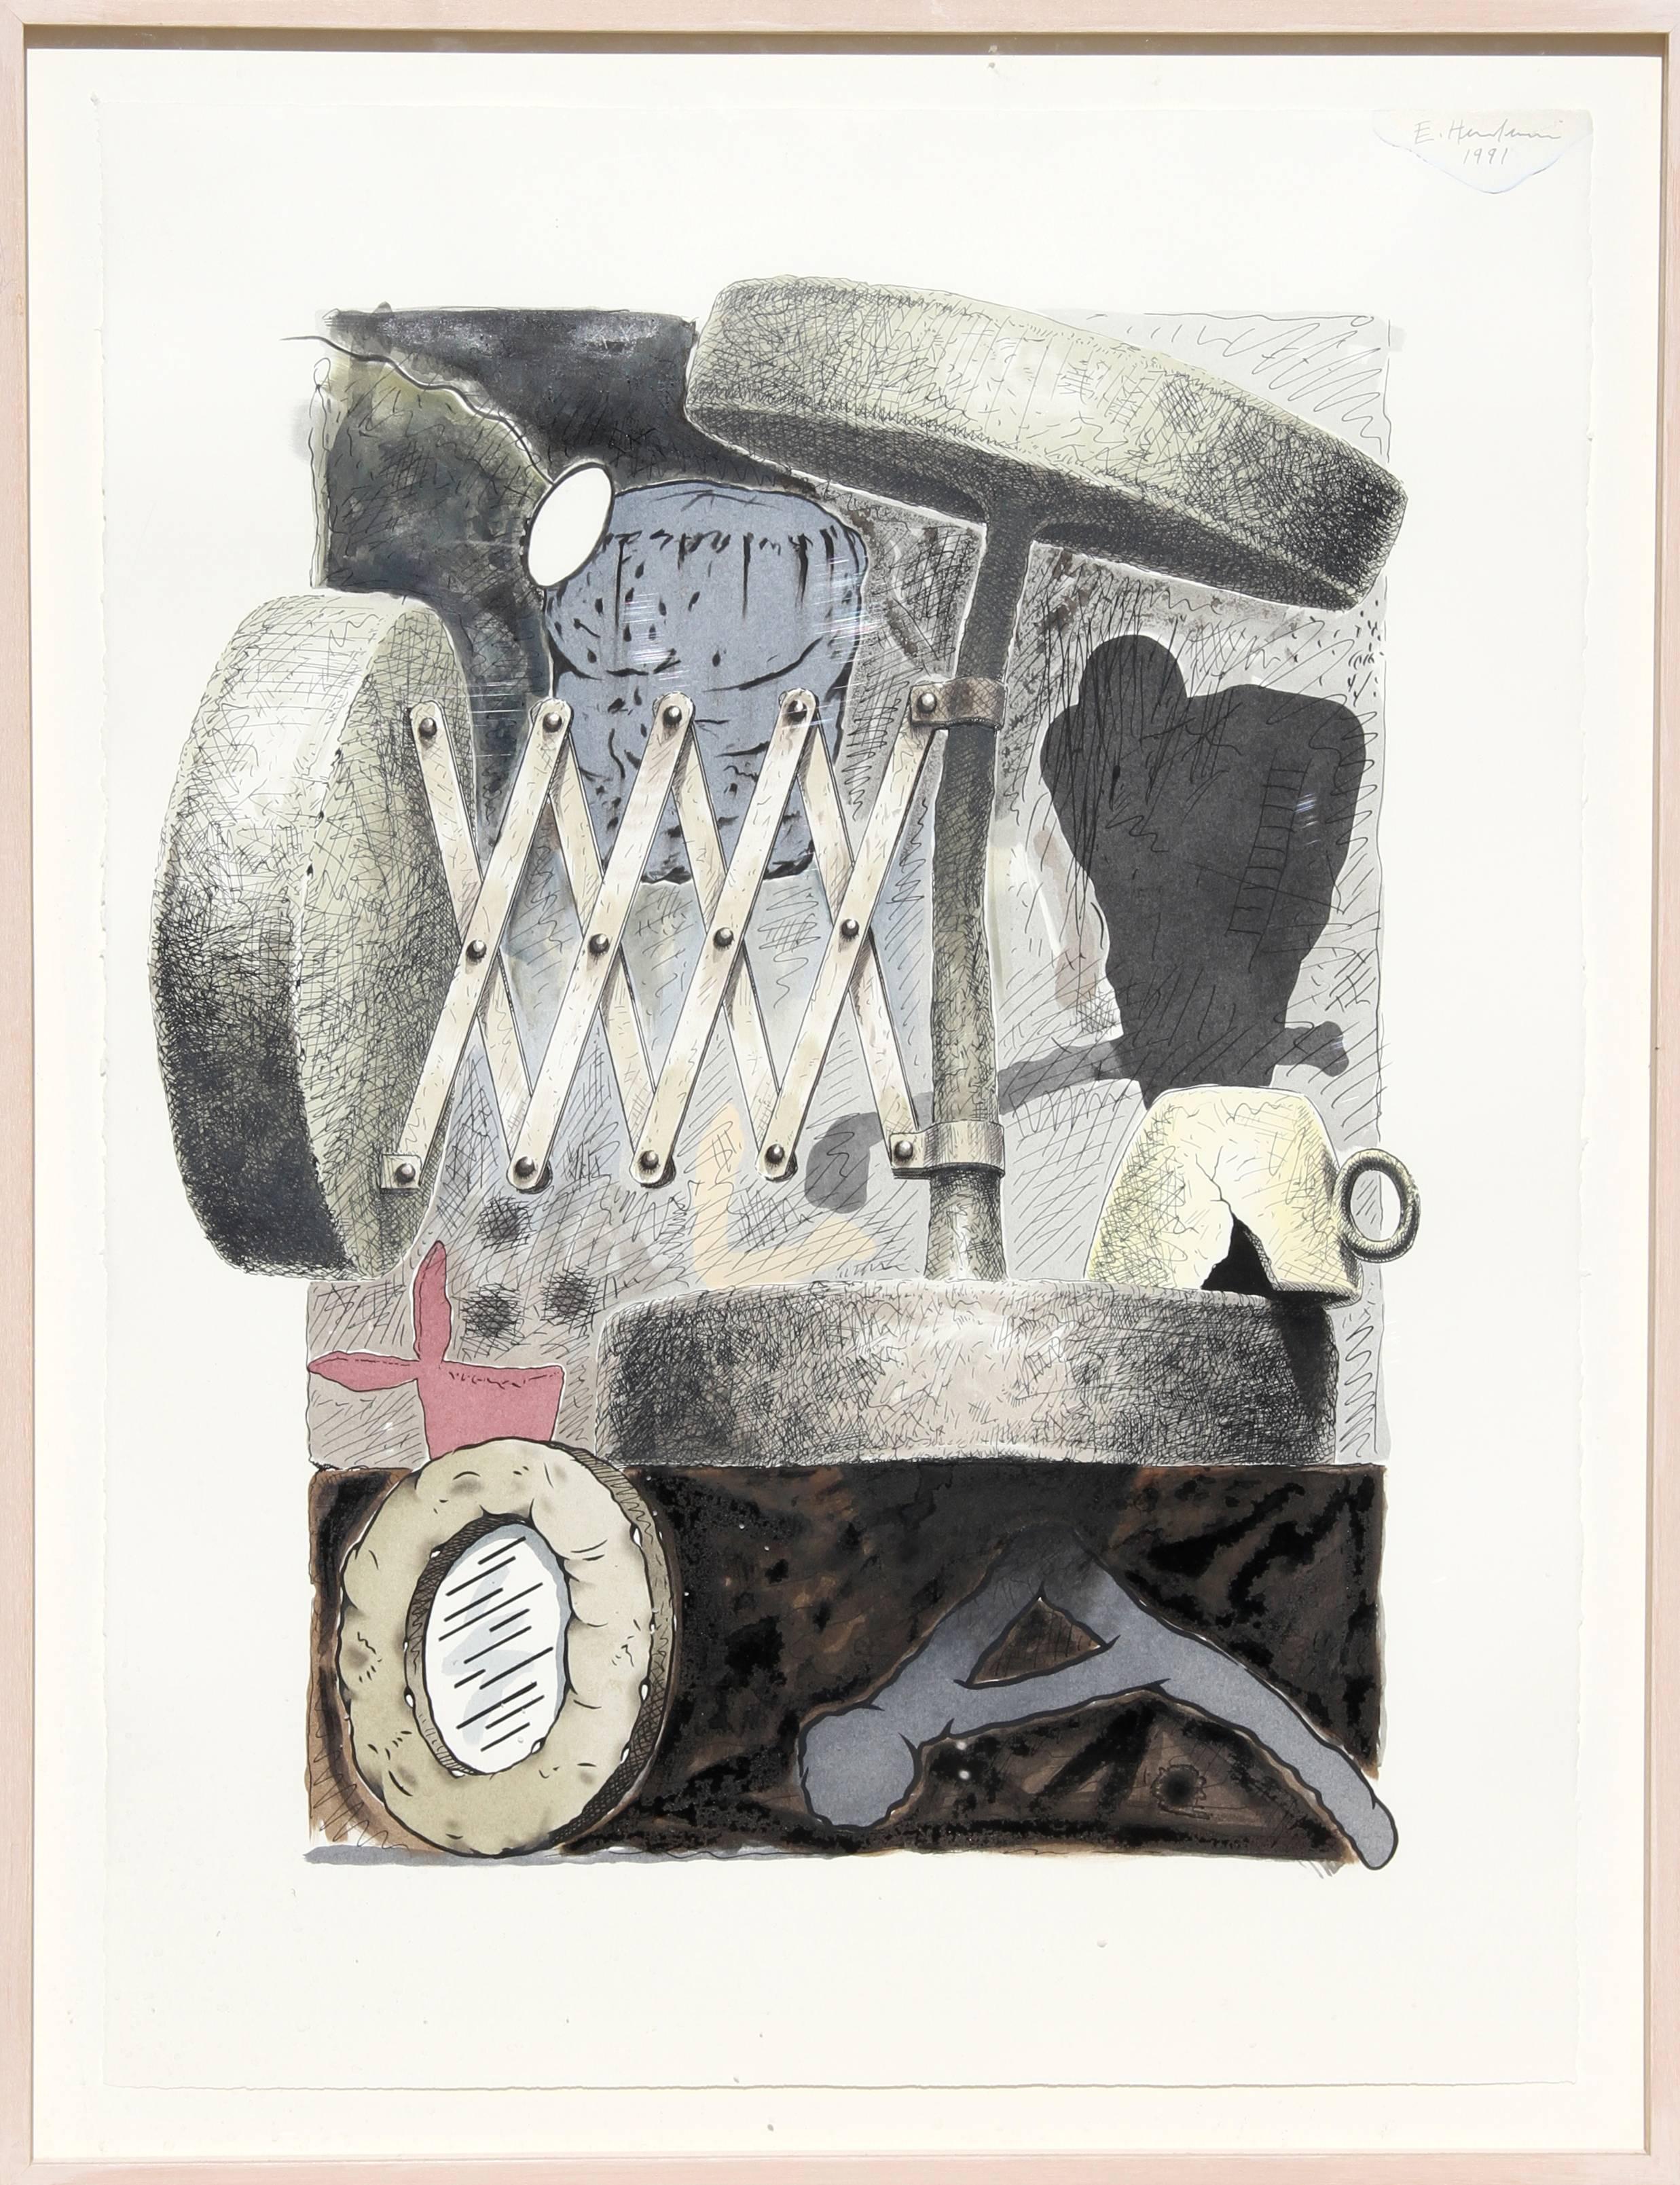 Mixed Media-Gemälde auf Papier von Edward Henderson, „Untitled 1“, 1991